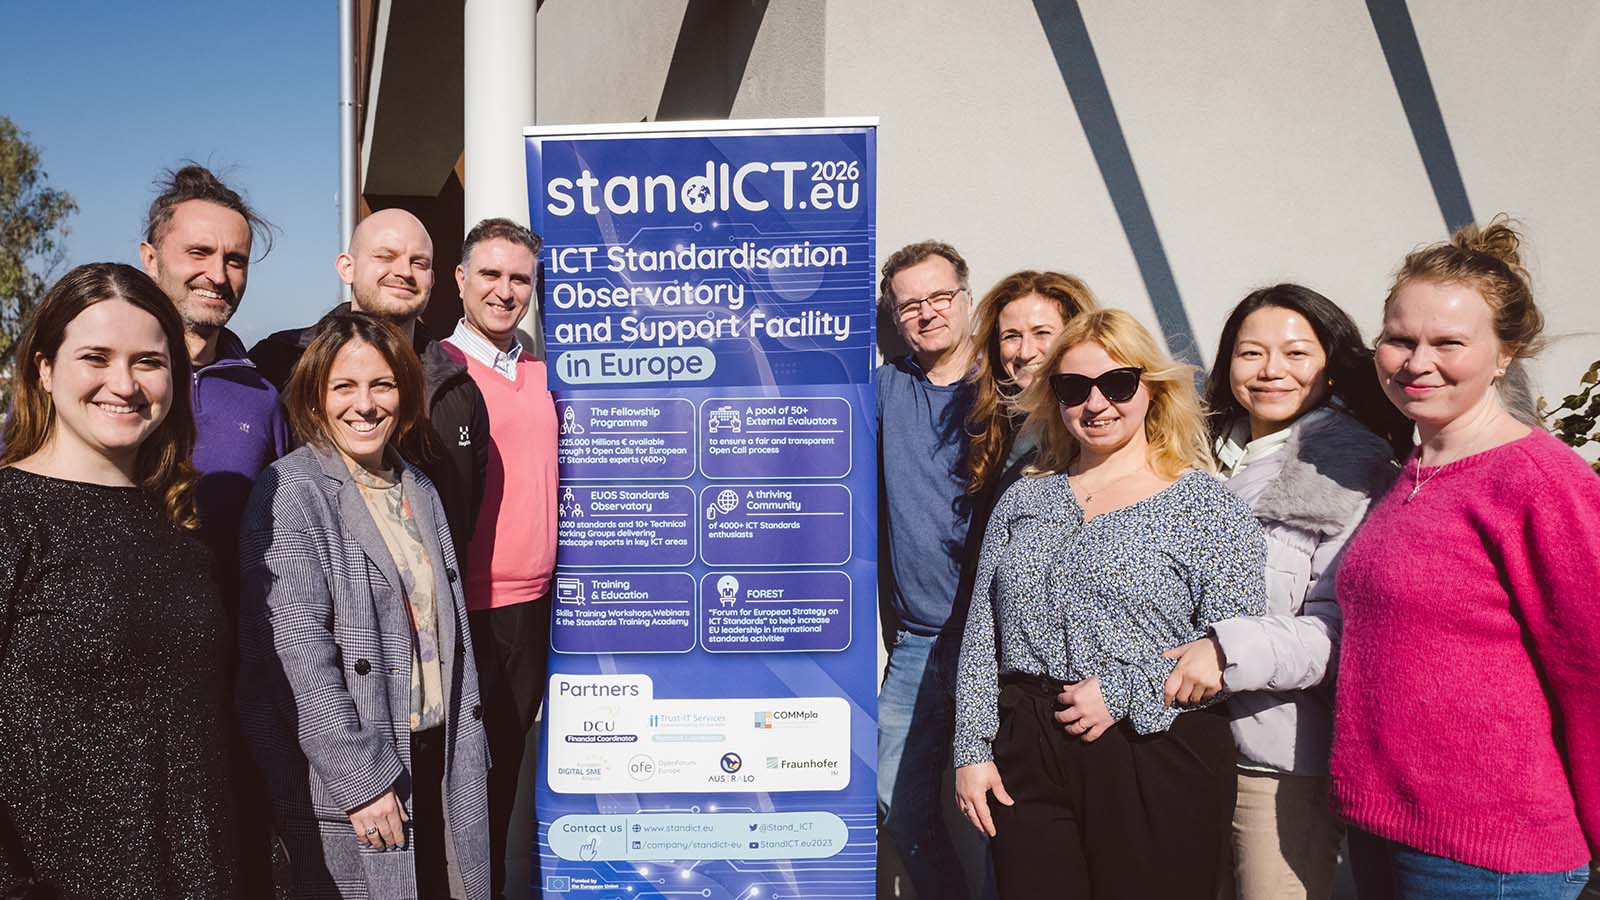 StandICT.eu 2026 Consortium